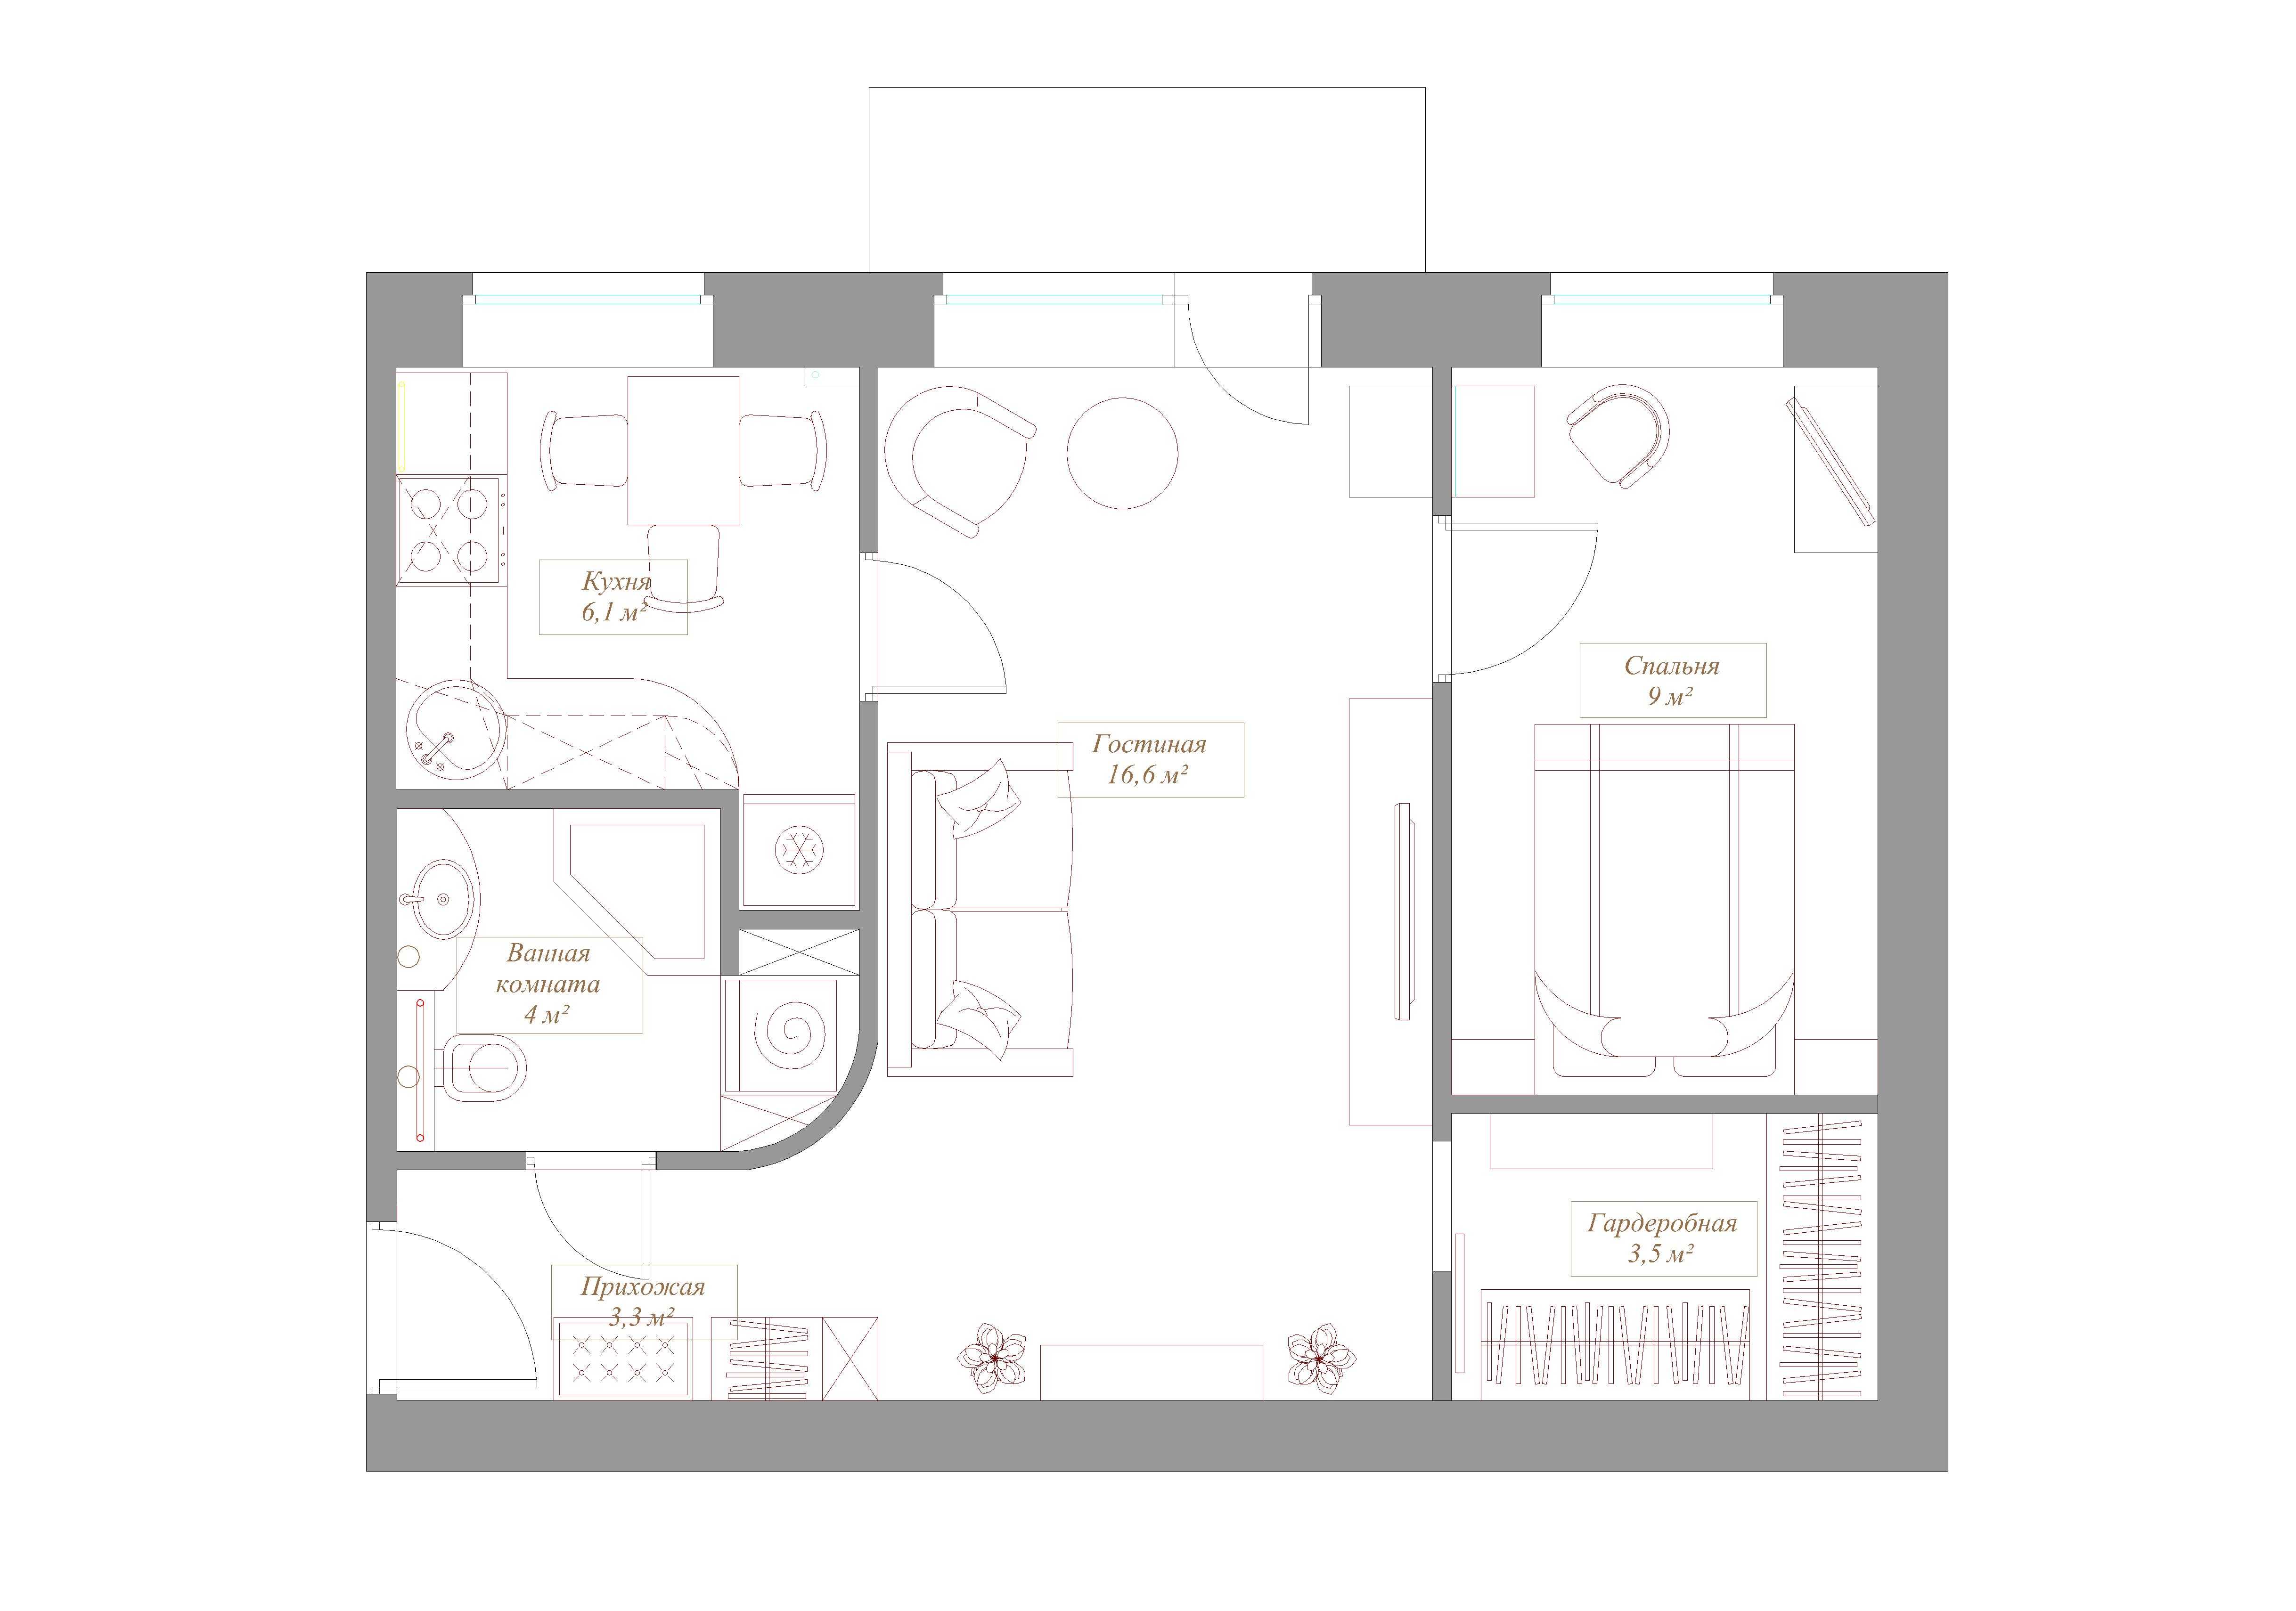 Хрущевка 3 комнатная: планировка, схема, размеры, высота в 5-ти этажном доме